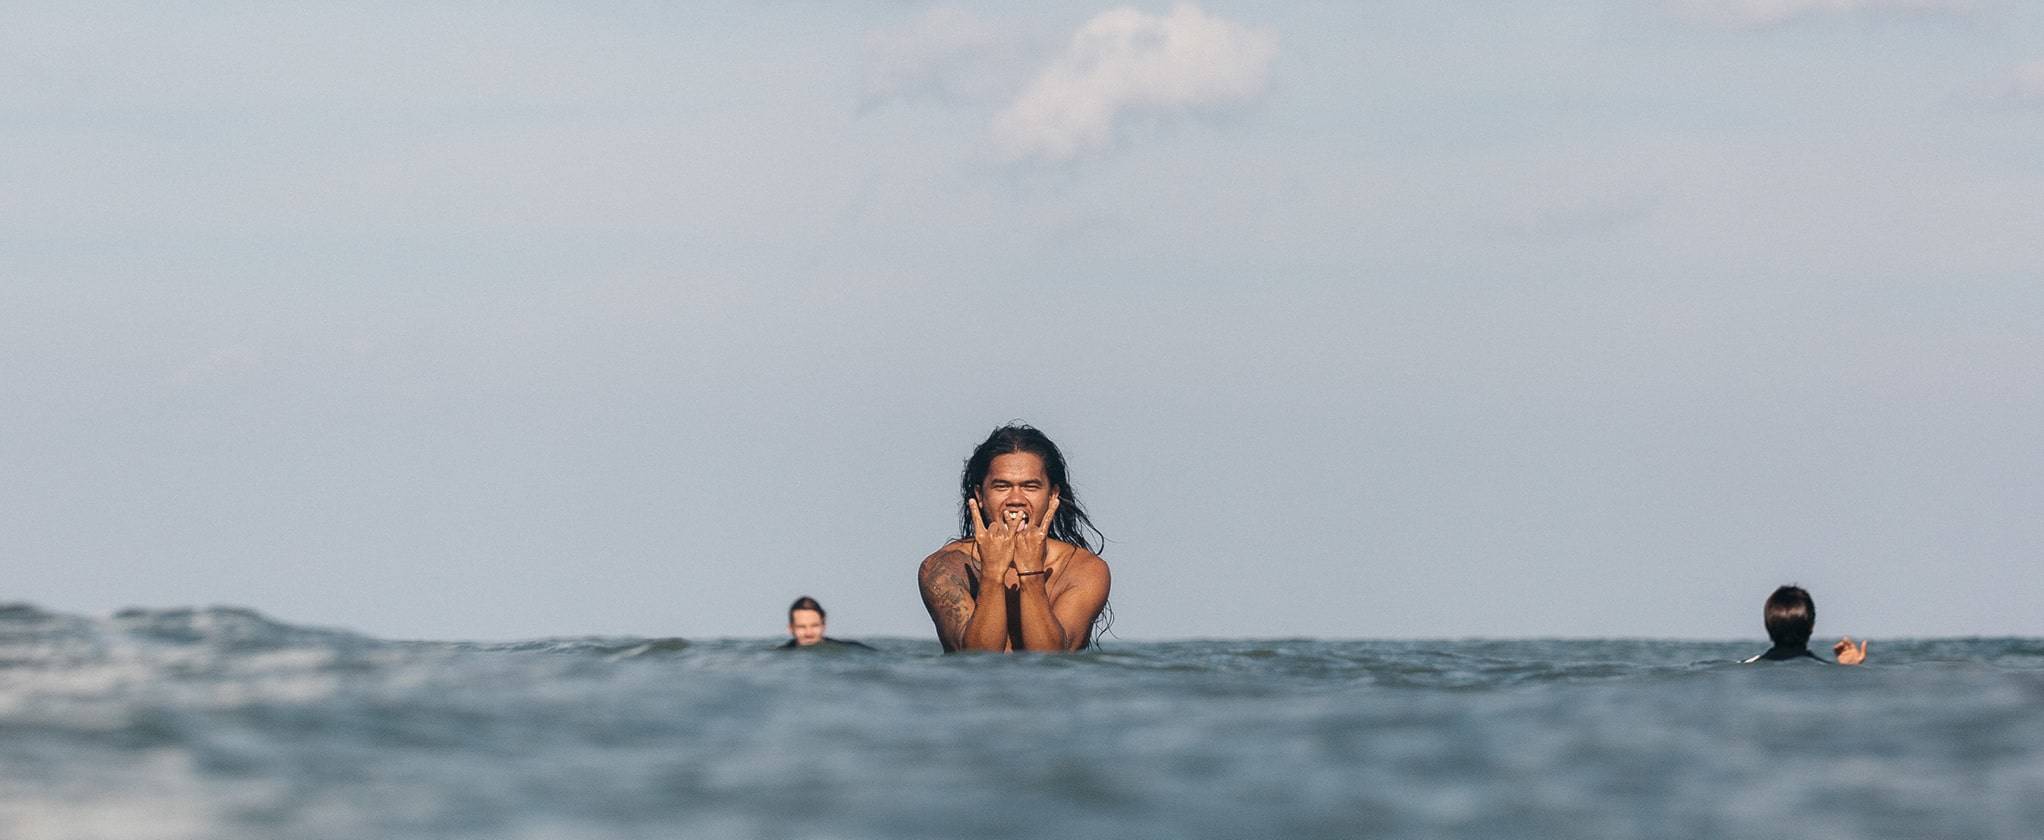 Kima Surf Bali: Kontaktiere uns bei weiteren Fragen